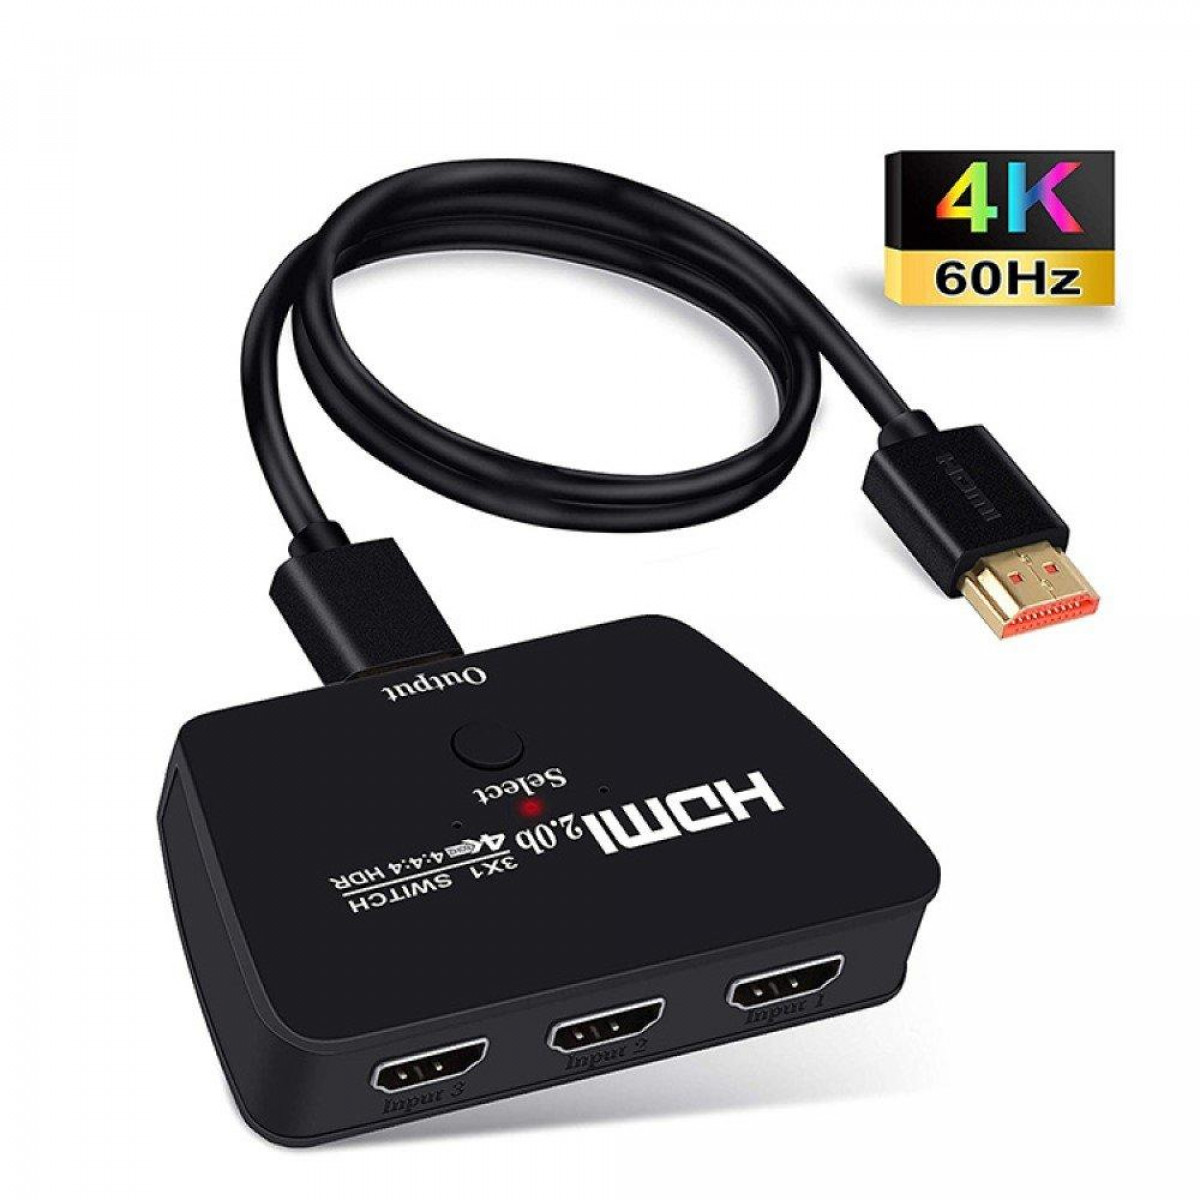 HDMI HDR, Switch (2160p) 3D HDMI und Switch mit INF 4K 3-1